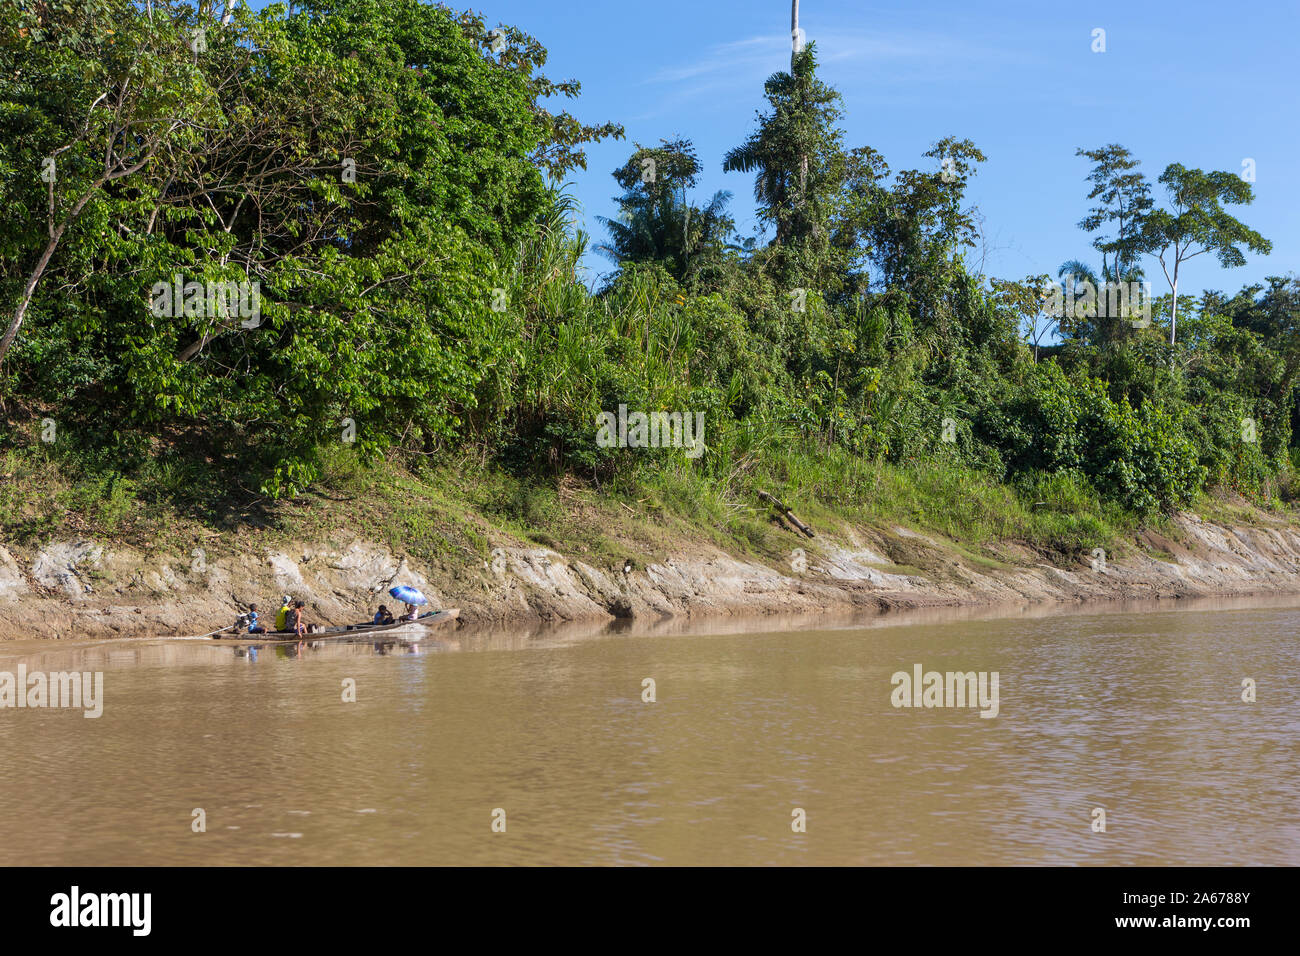 Vista del motor barcos de madera rústica con la gente local sobre el río Purus en Amazon en un día soleado de verano, con árboles en la ribera del río y cielo azul. Foto de stock